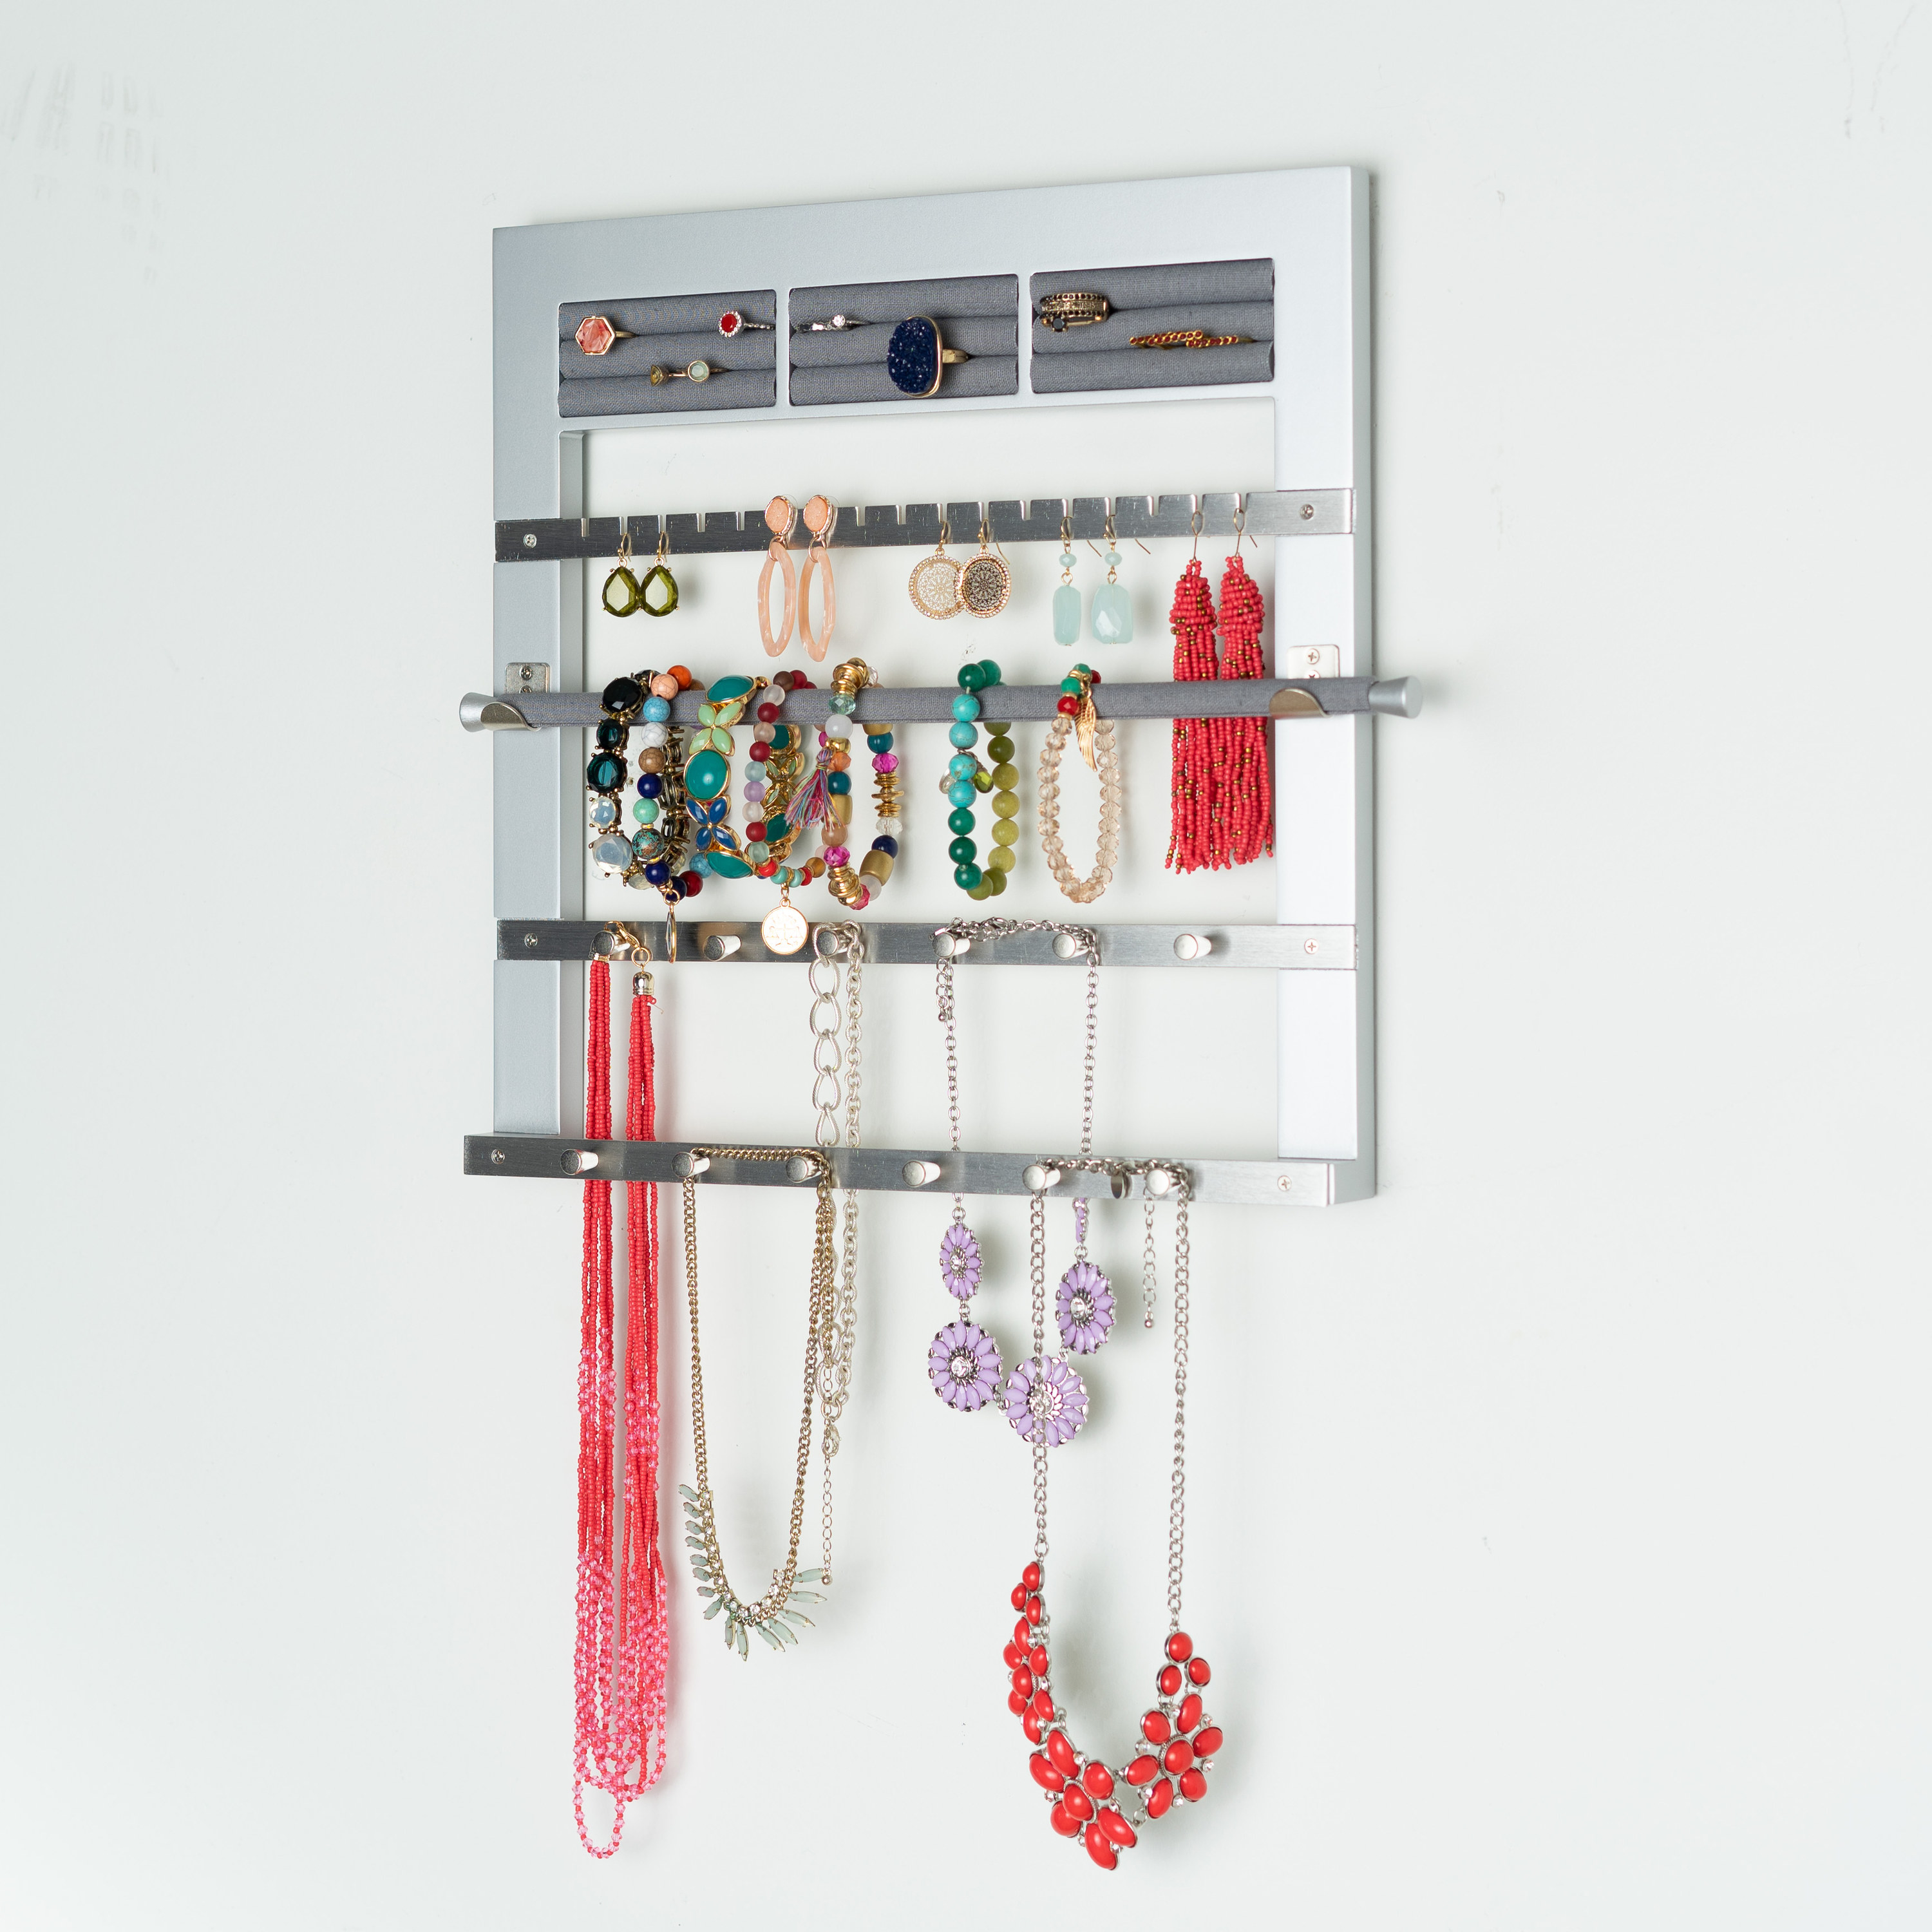 The jewelry storage rack